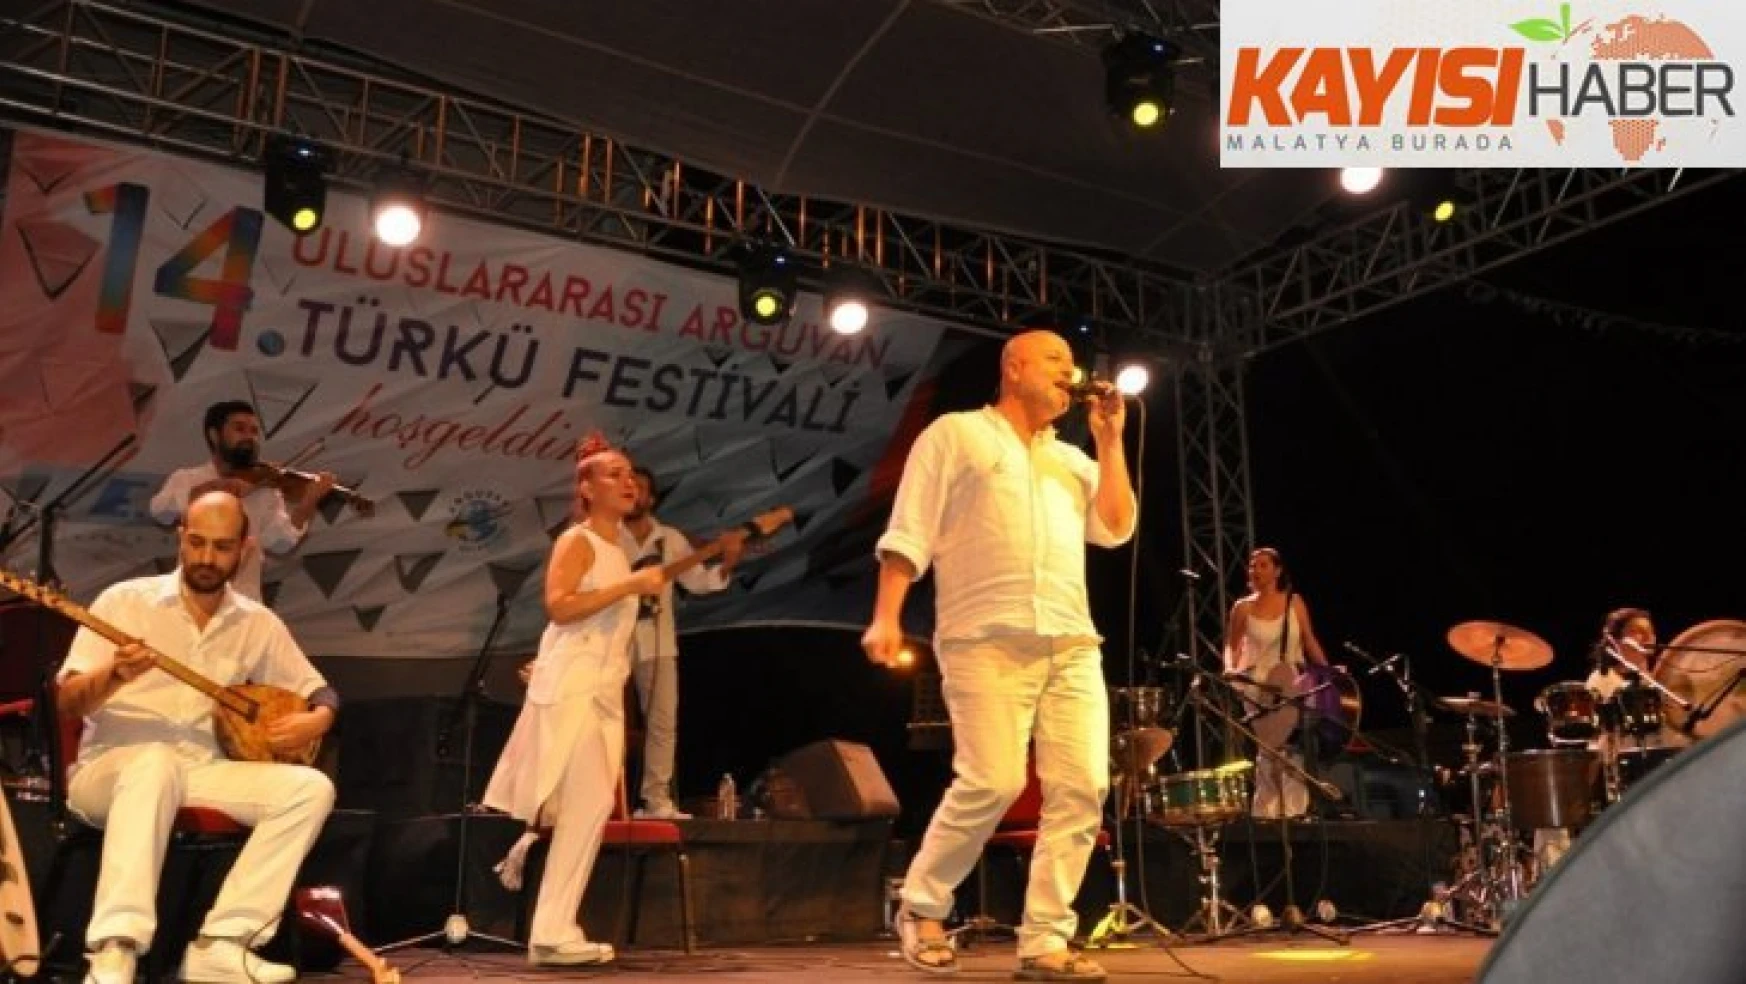 Arguvan'da Türkü Festivali coşkusu